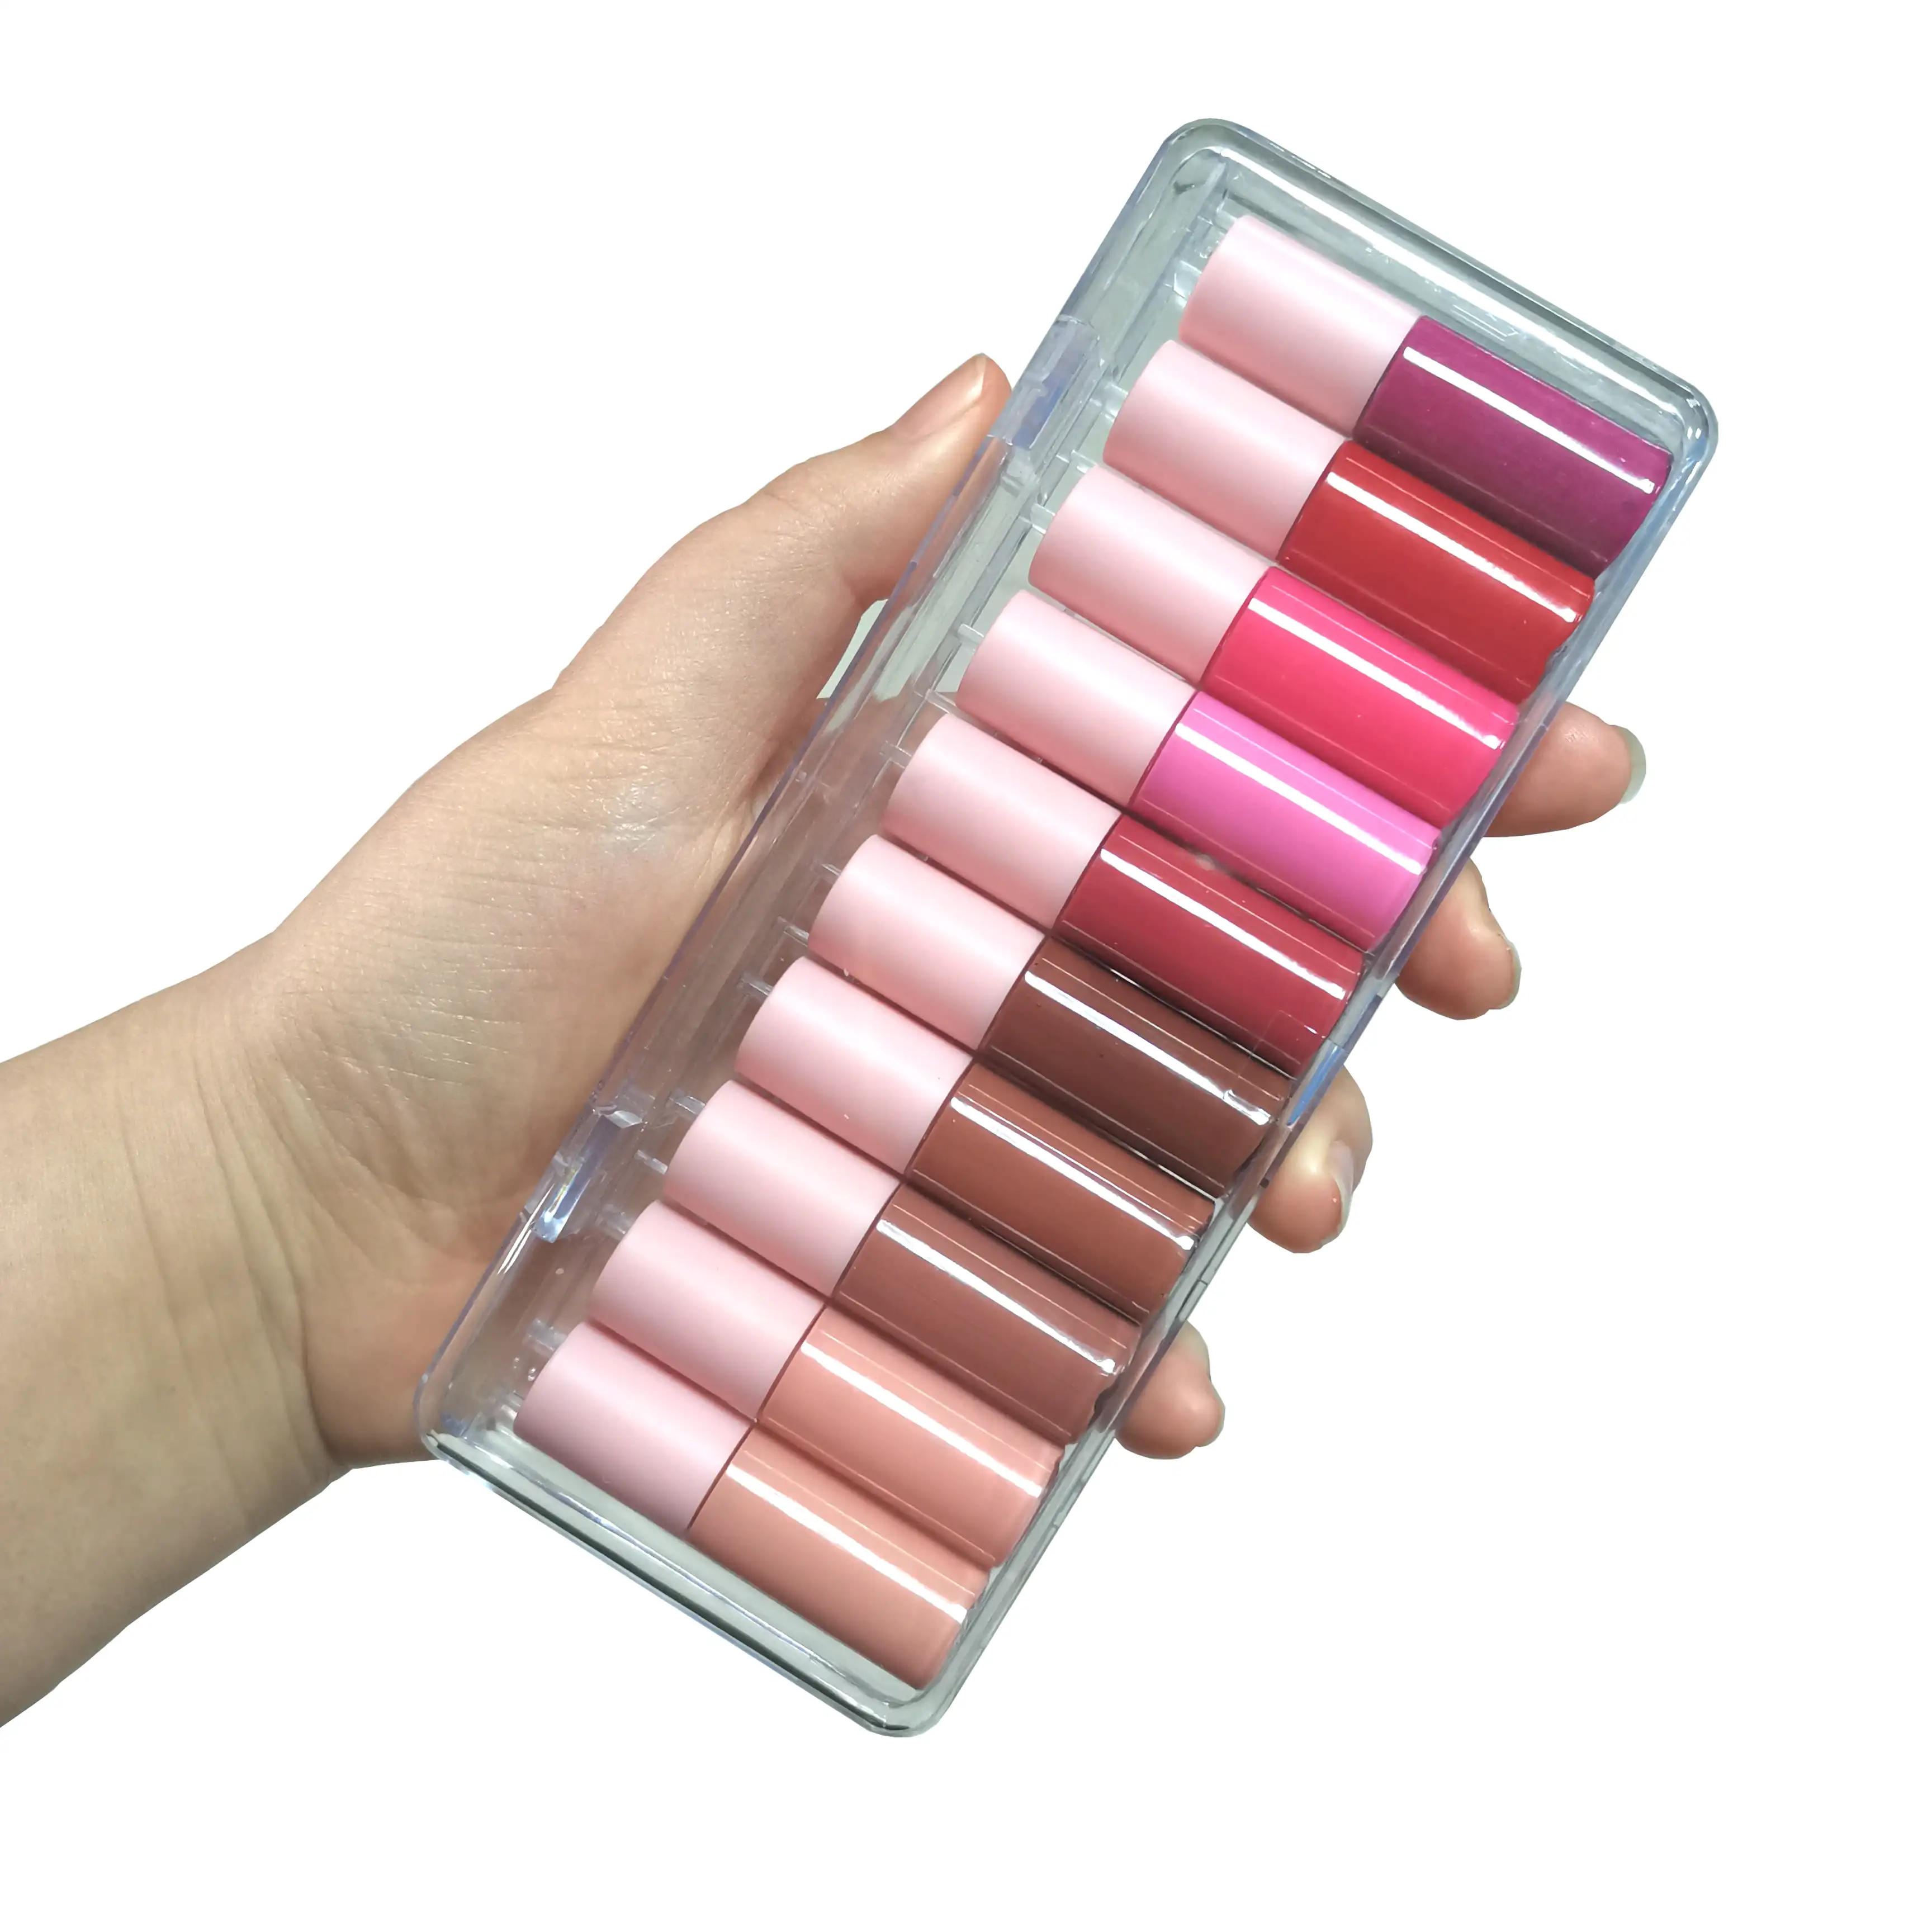 개인 라벨 10pcs 미니 립 유약 매트 촉촉한 액체 립스틱 립글로스 세트 미니 가방 립글로스 100 색